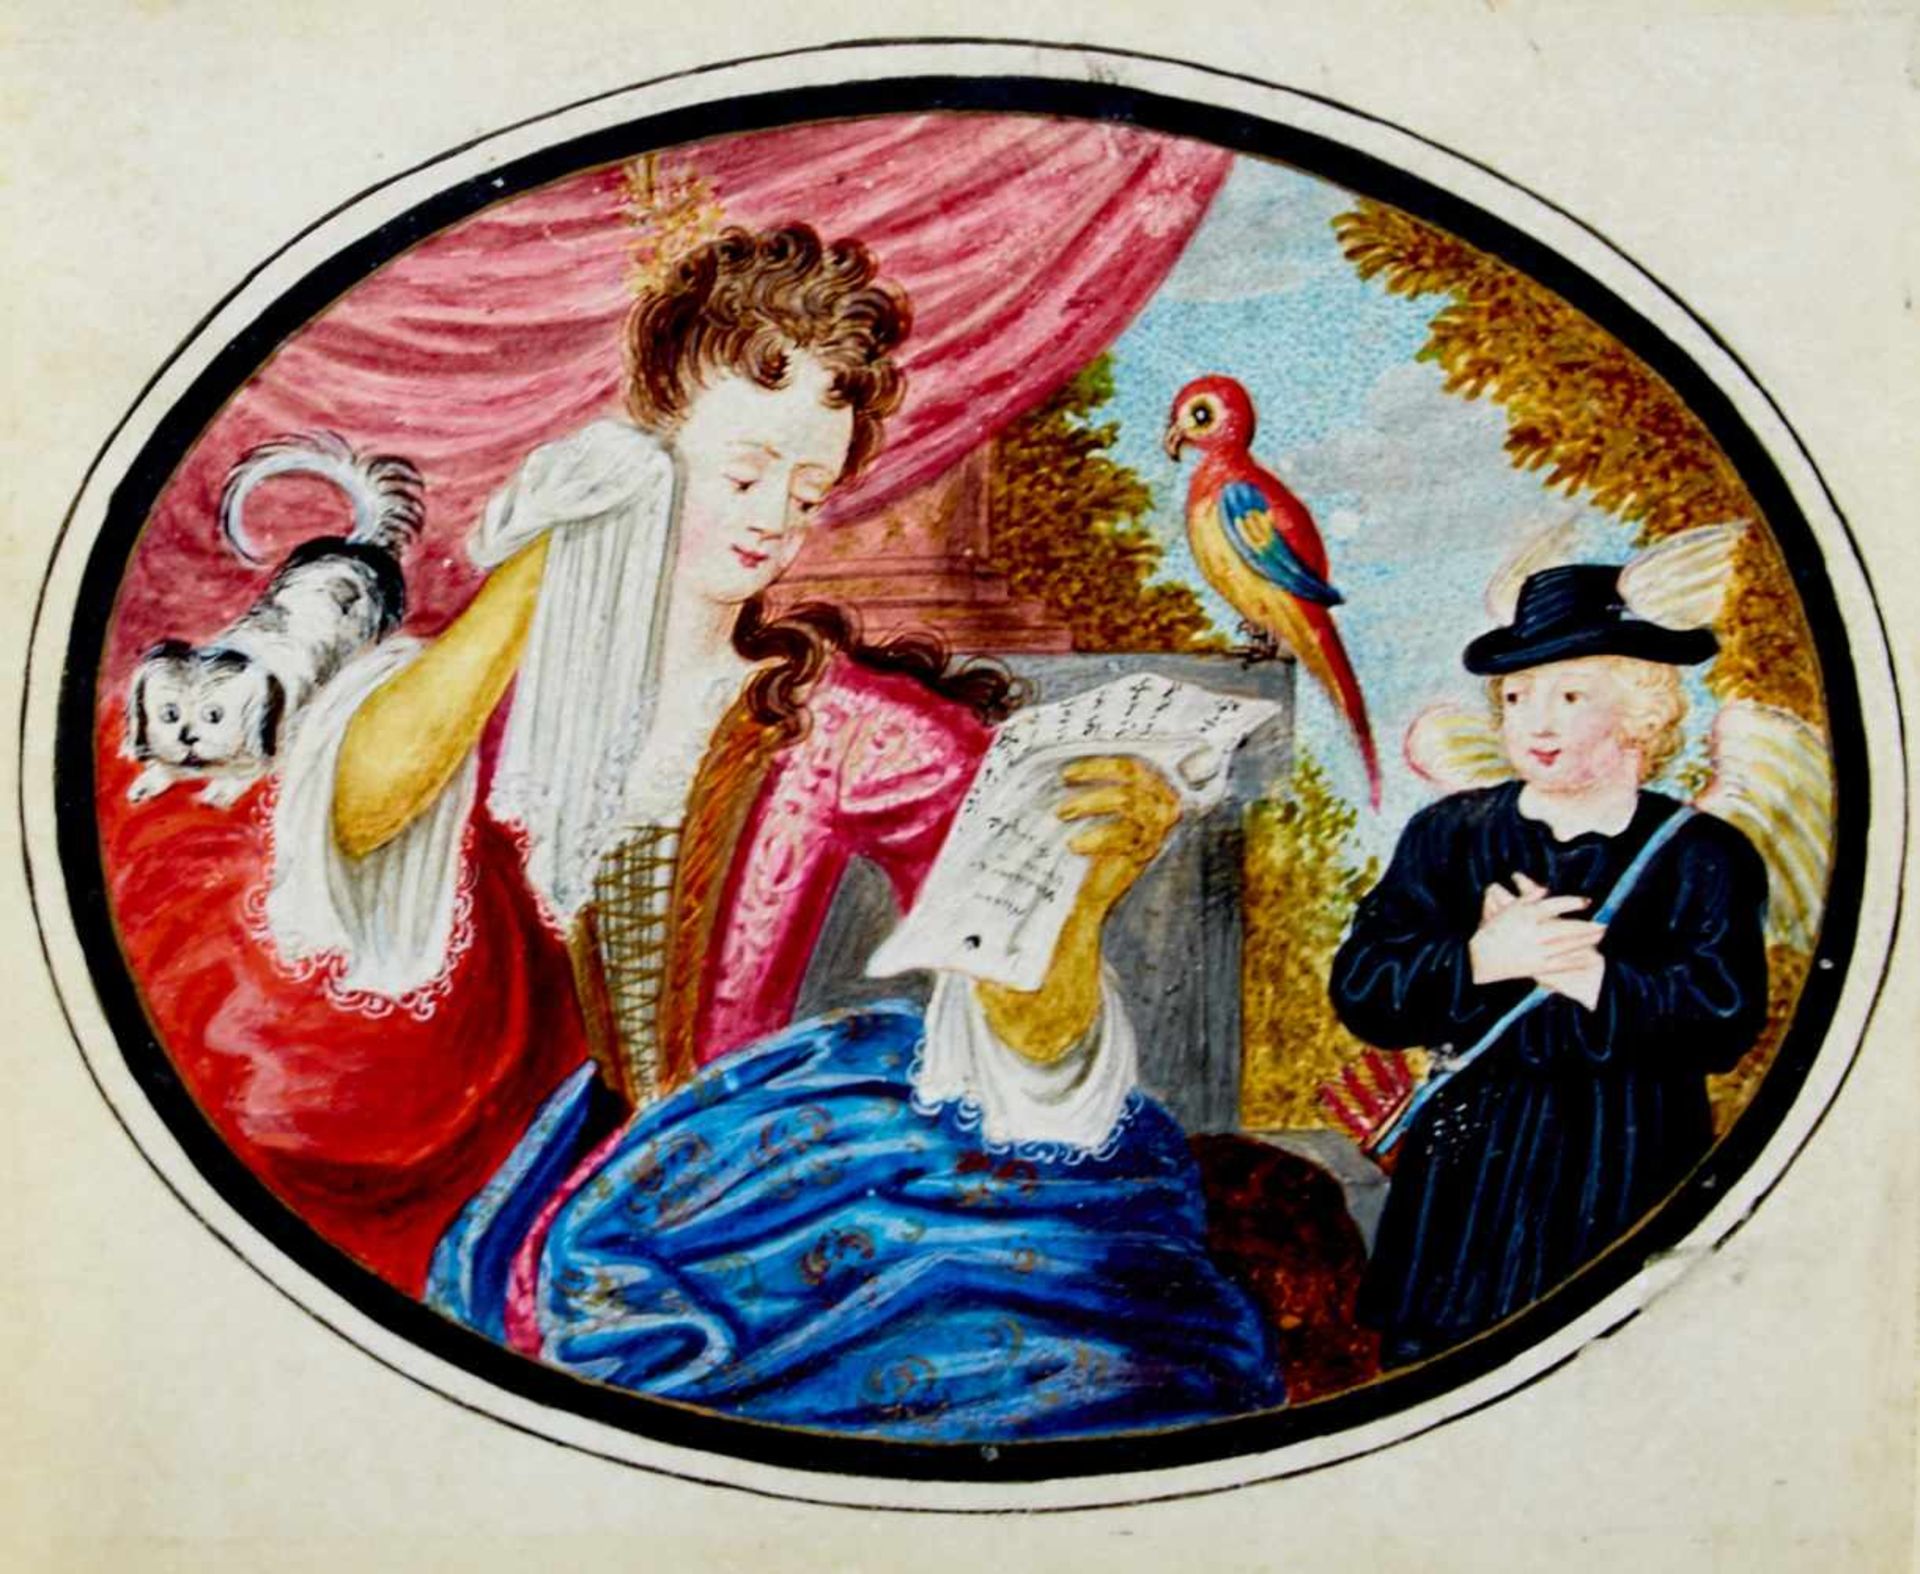 Kunstbillet - Goldgehöhte Gouacheauf Pergament. Deutschland, um 1760. 8 x 9,8 cm. - Unter